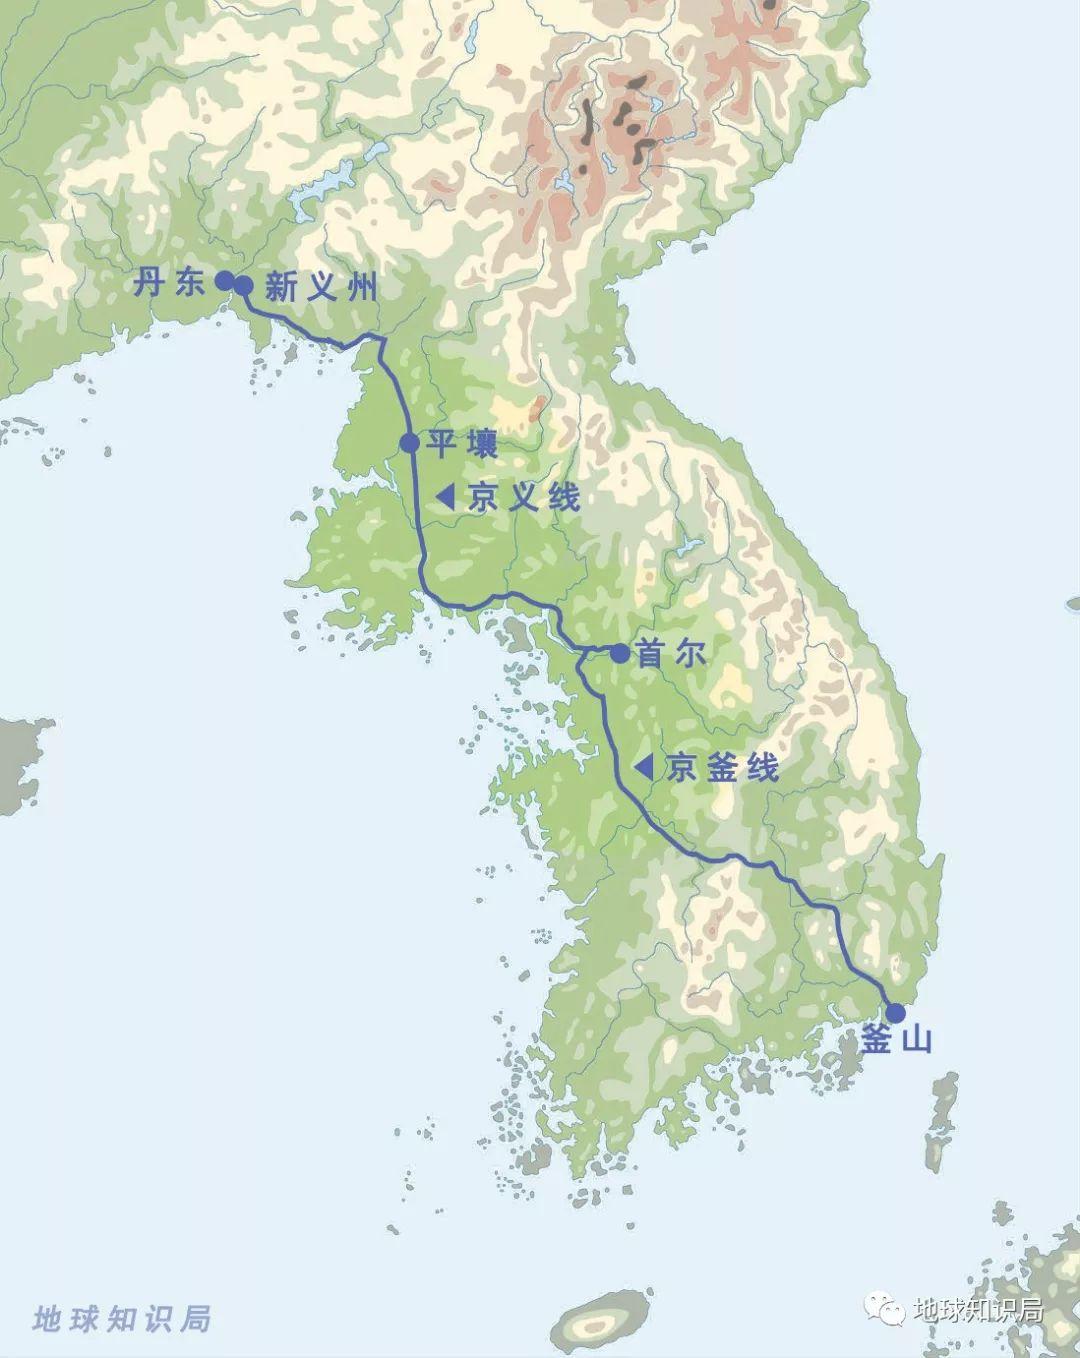 什么是“东北亚铁路共同体”？